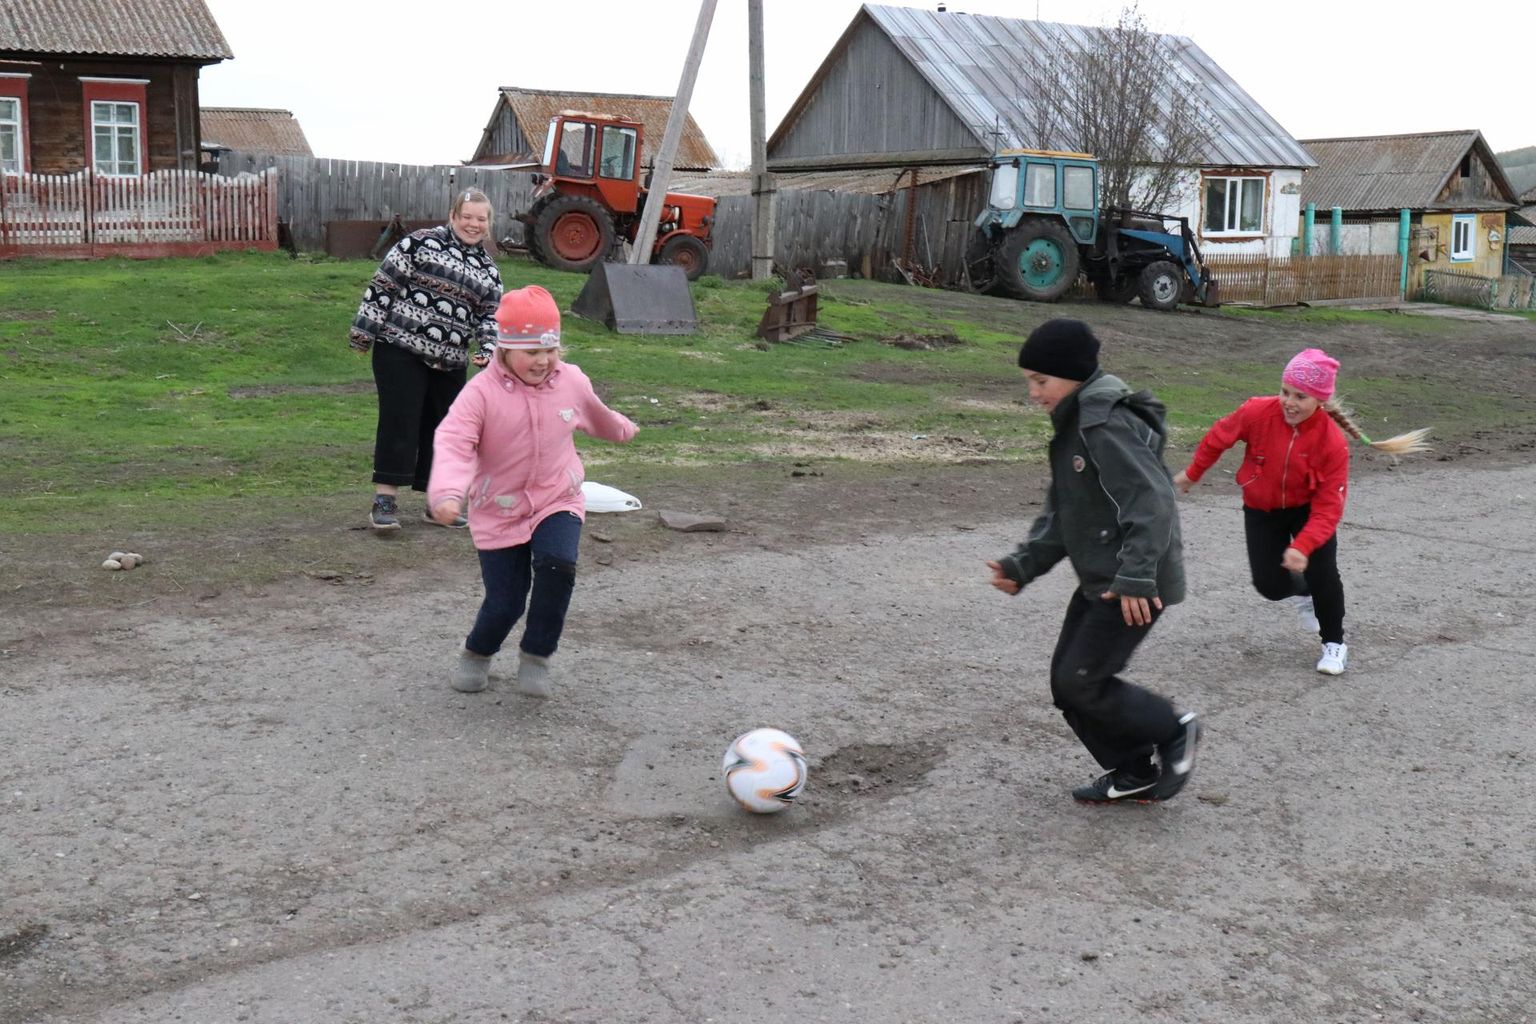 Suetuki lapsed mängivad kiriku juures jalgpalli. Kirikut taastavad soome vabatahtlikud, kes vene keelt ei oska. Kohalikud ei oska jälle soome keelt. Nii ongi jalgpall ka Suetukis universaalne keelebarjääri ületaja, vähemalt soomlaste ja laste vahel.